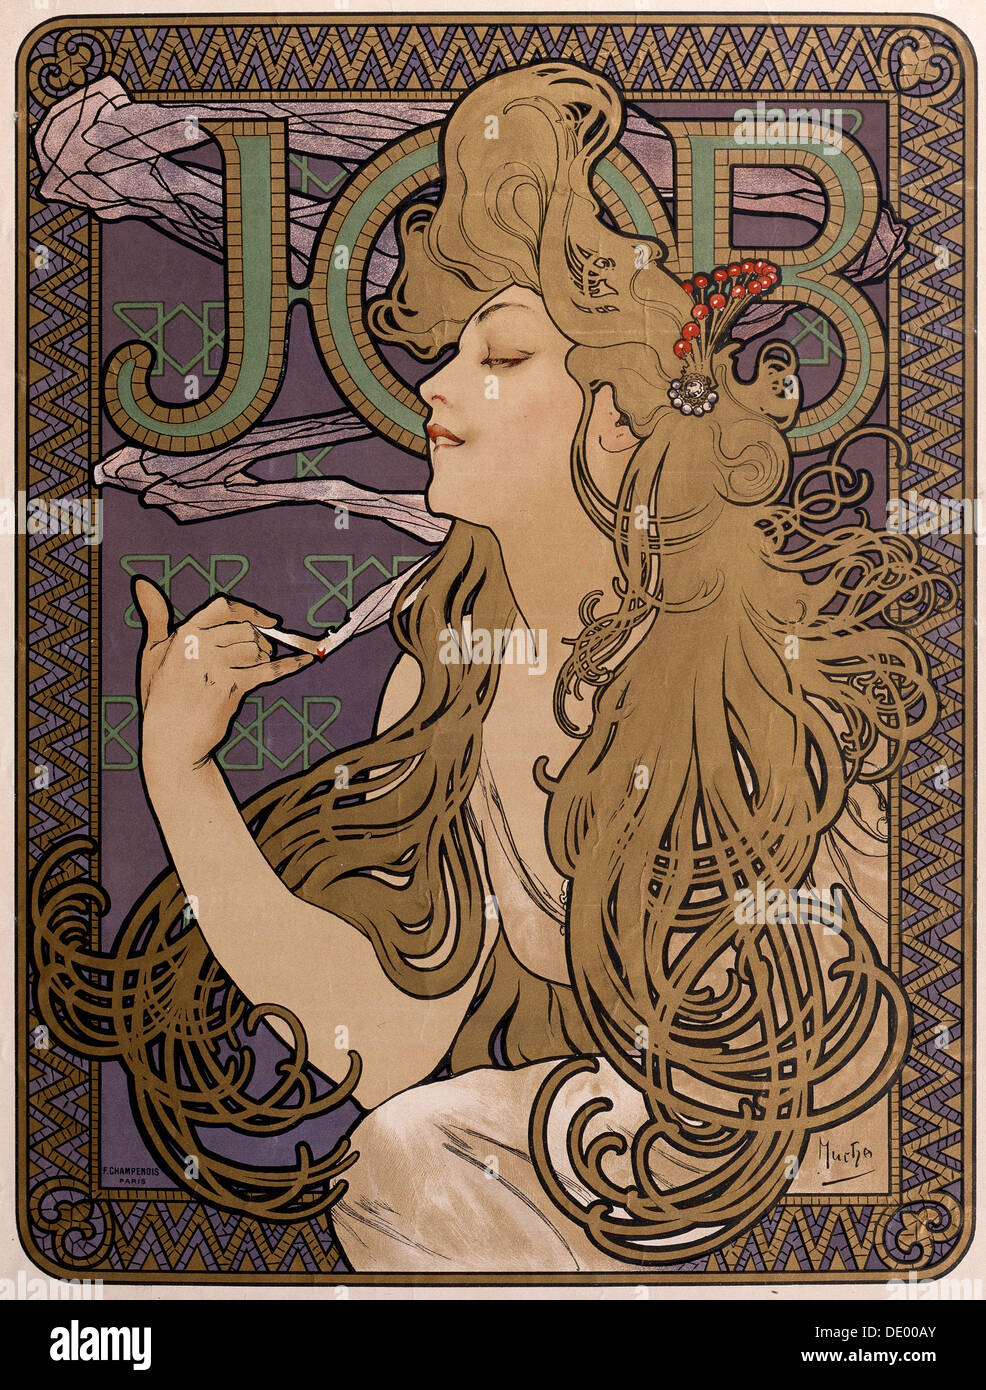 Poster for 'Job' tissue paper, 1897. Artist: Alphonse Mucha Stock Photo